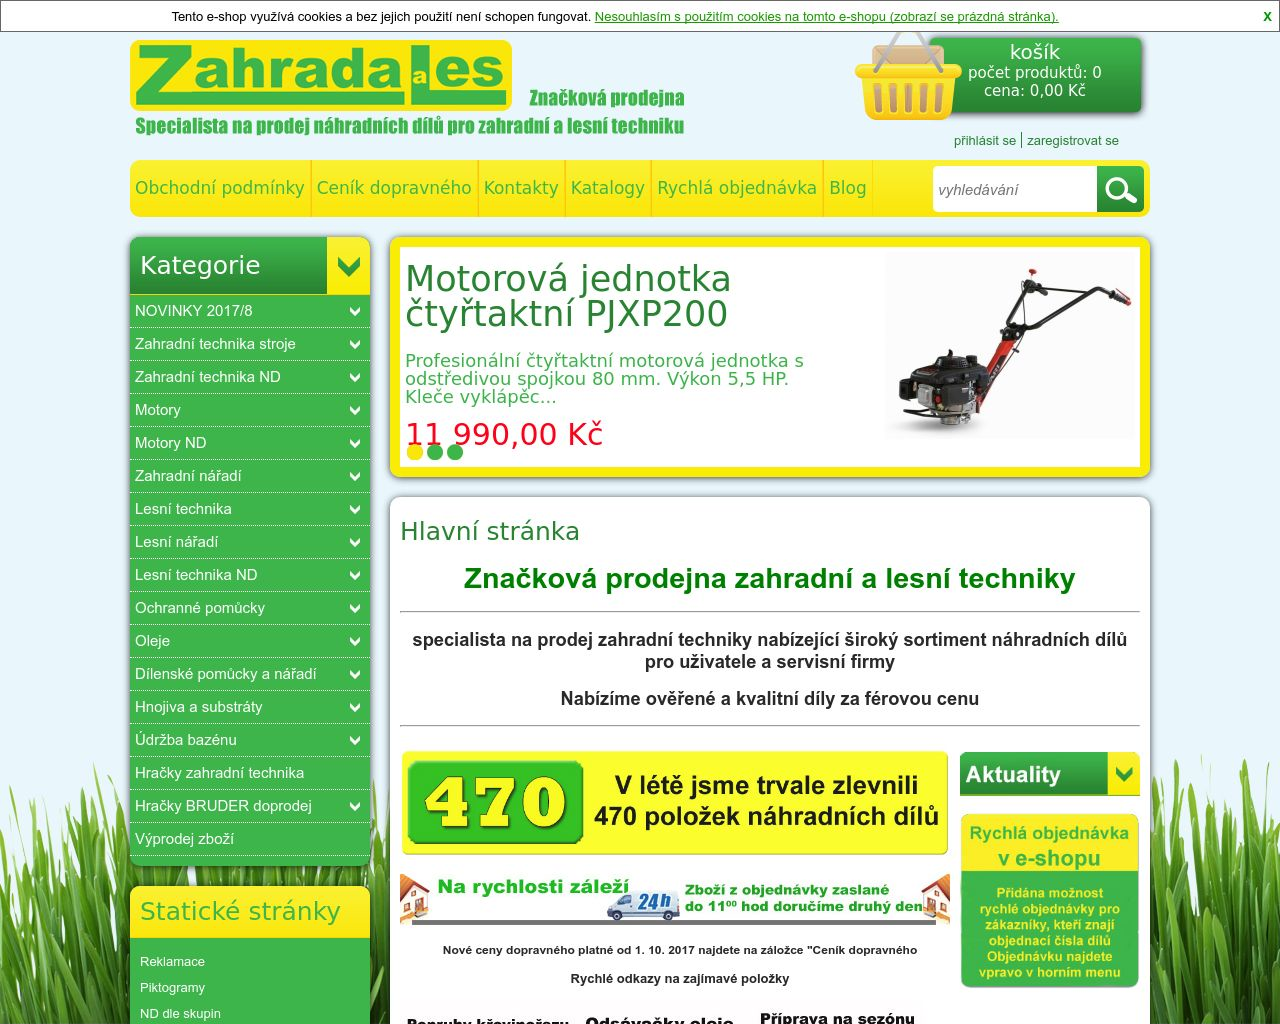 Site Image zahradales.cz v 1280x1024